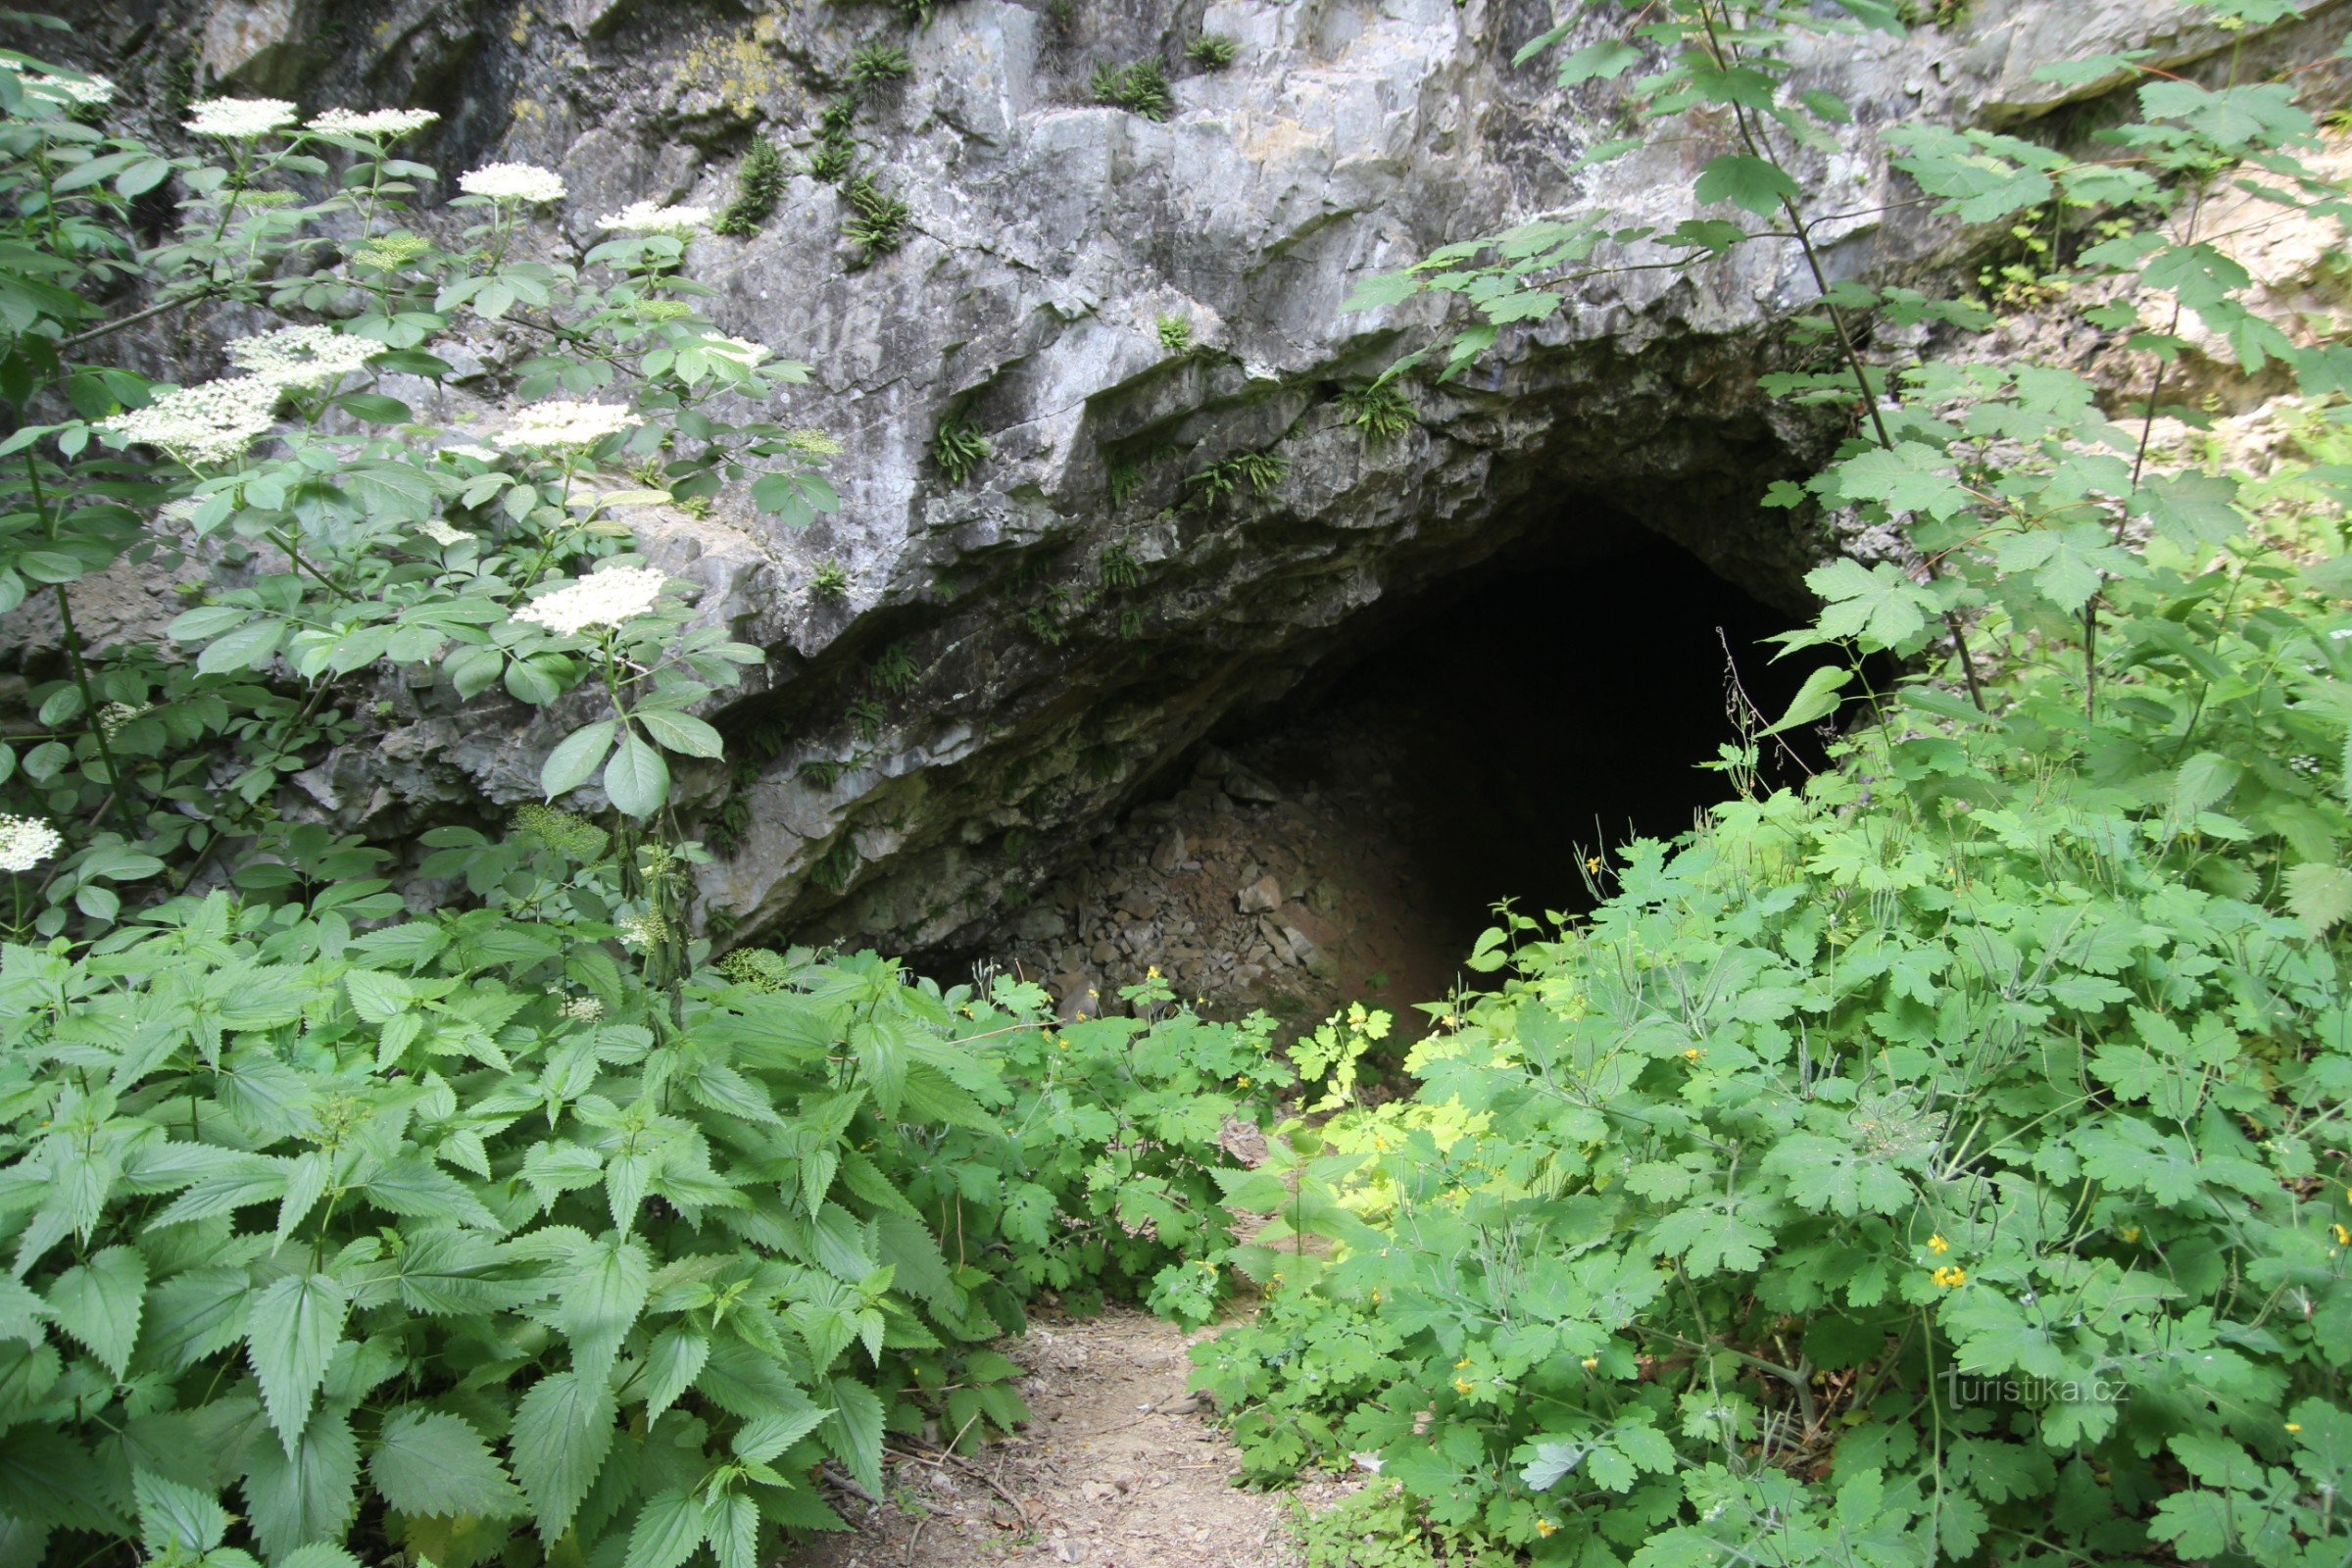 L'entrée de la grotte aujourd'hui